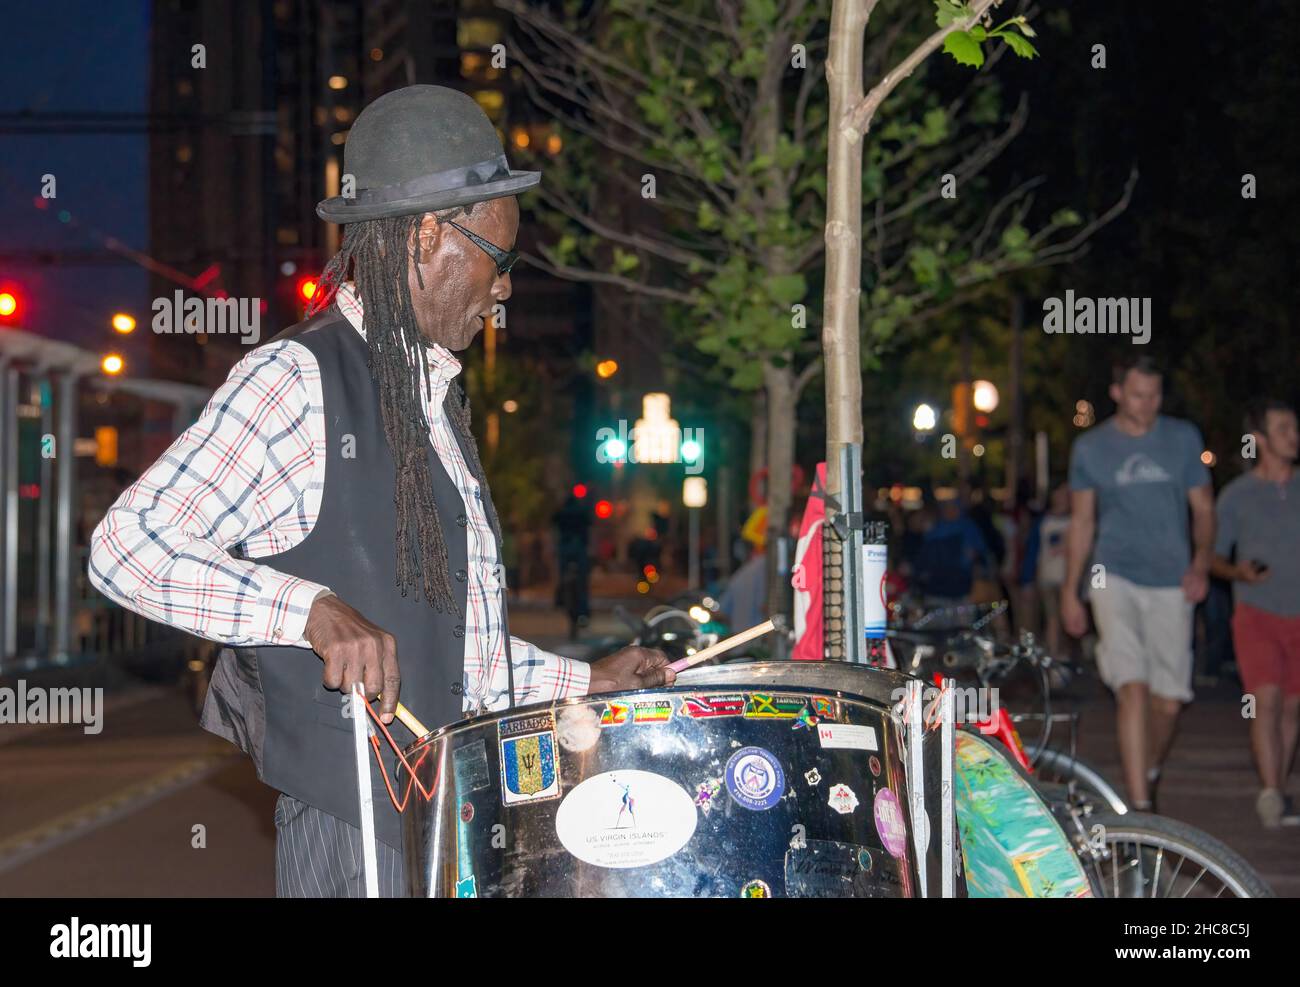 Toronto, Canada - le 1 juillet 2015 : un musicien de rue afro-antillais joue de la batterie à Toronto Harbourfront la nuit Banque D'Images